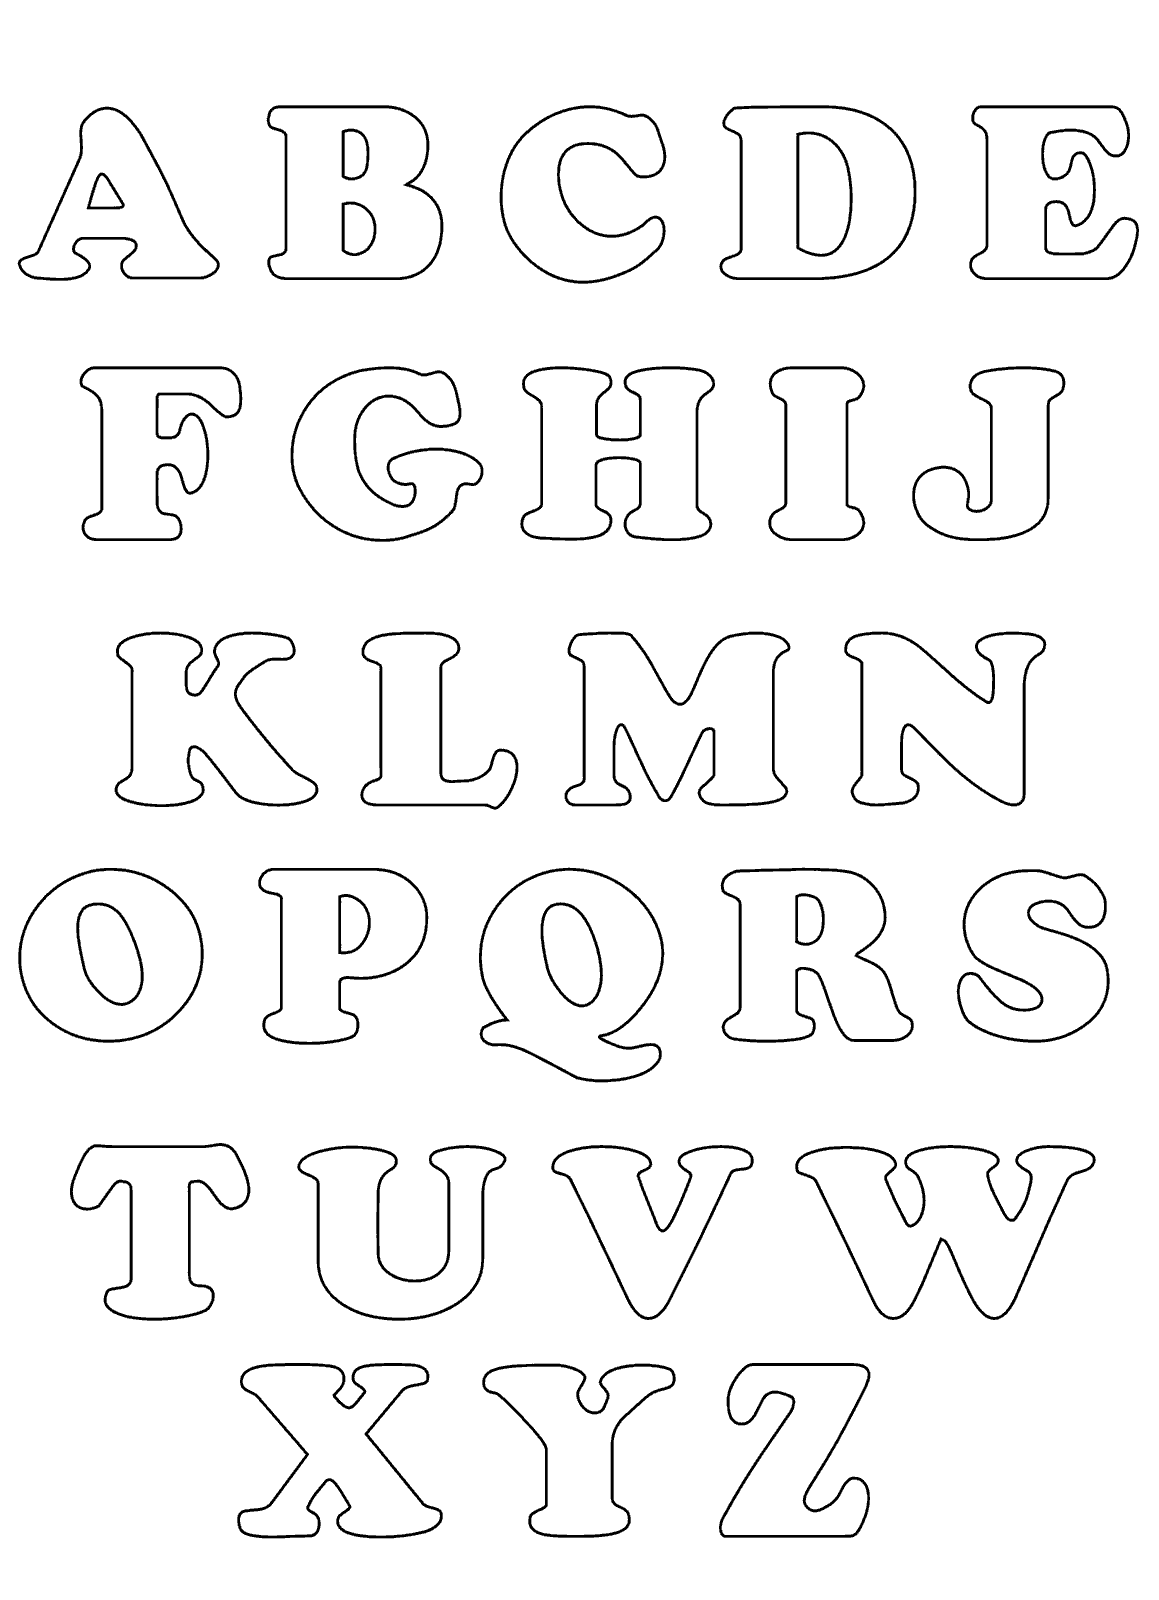 Moldes De Letras Do Alfabeto Em Eva Para Imprimir